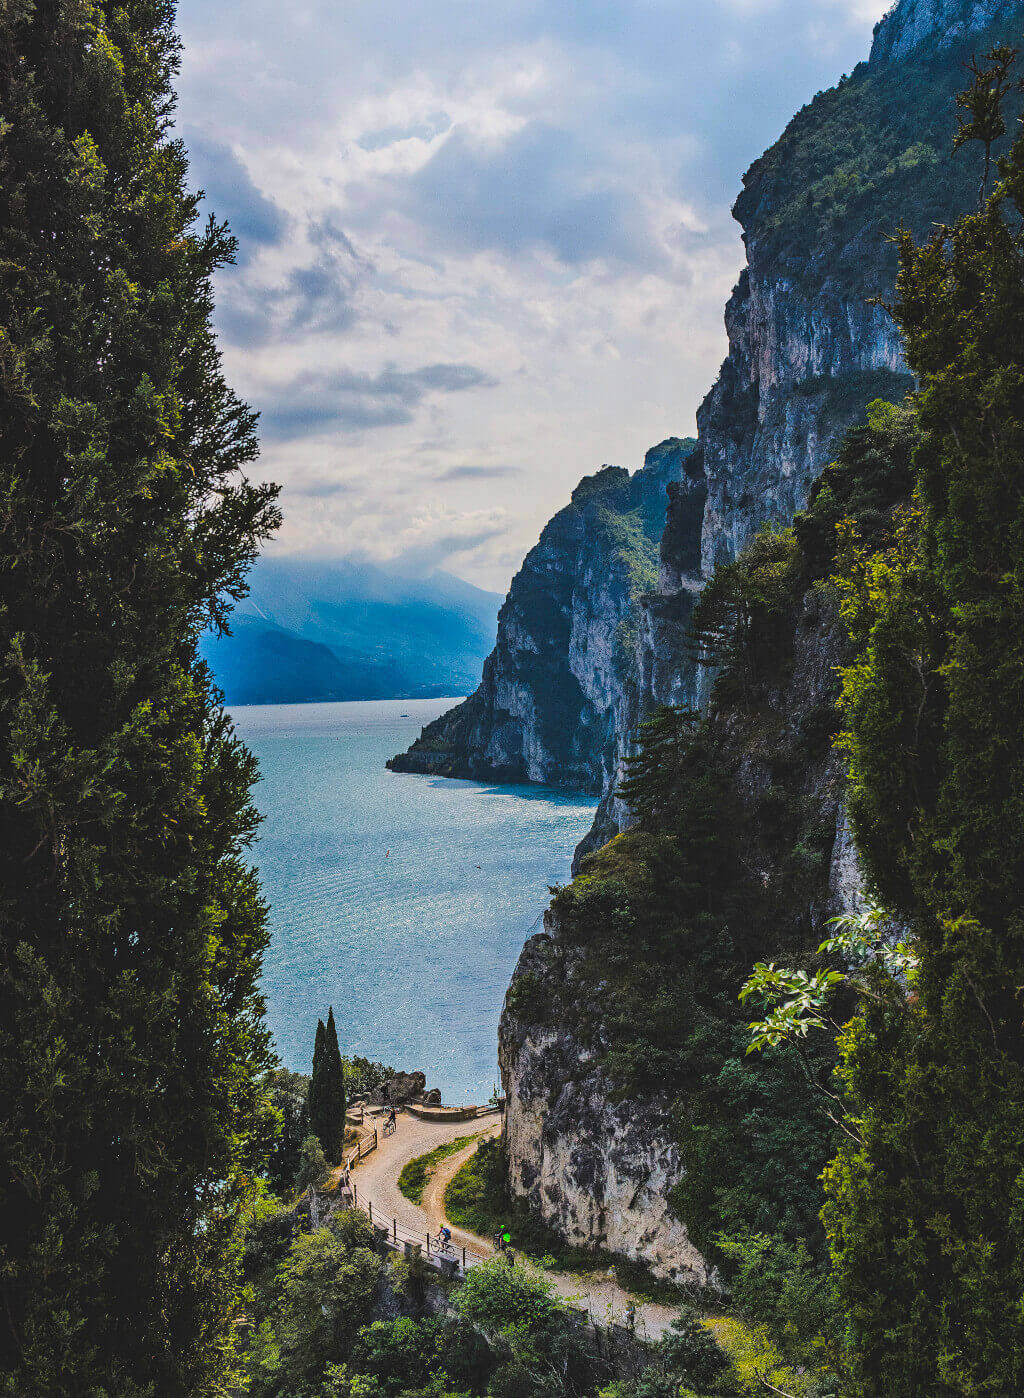 The Ponale pathway: Riva del Garda – Lago di Ledro